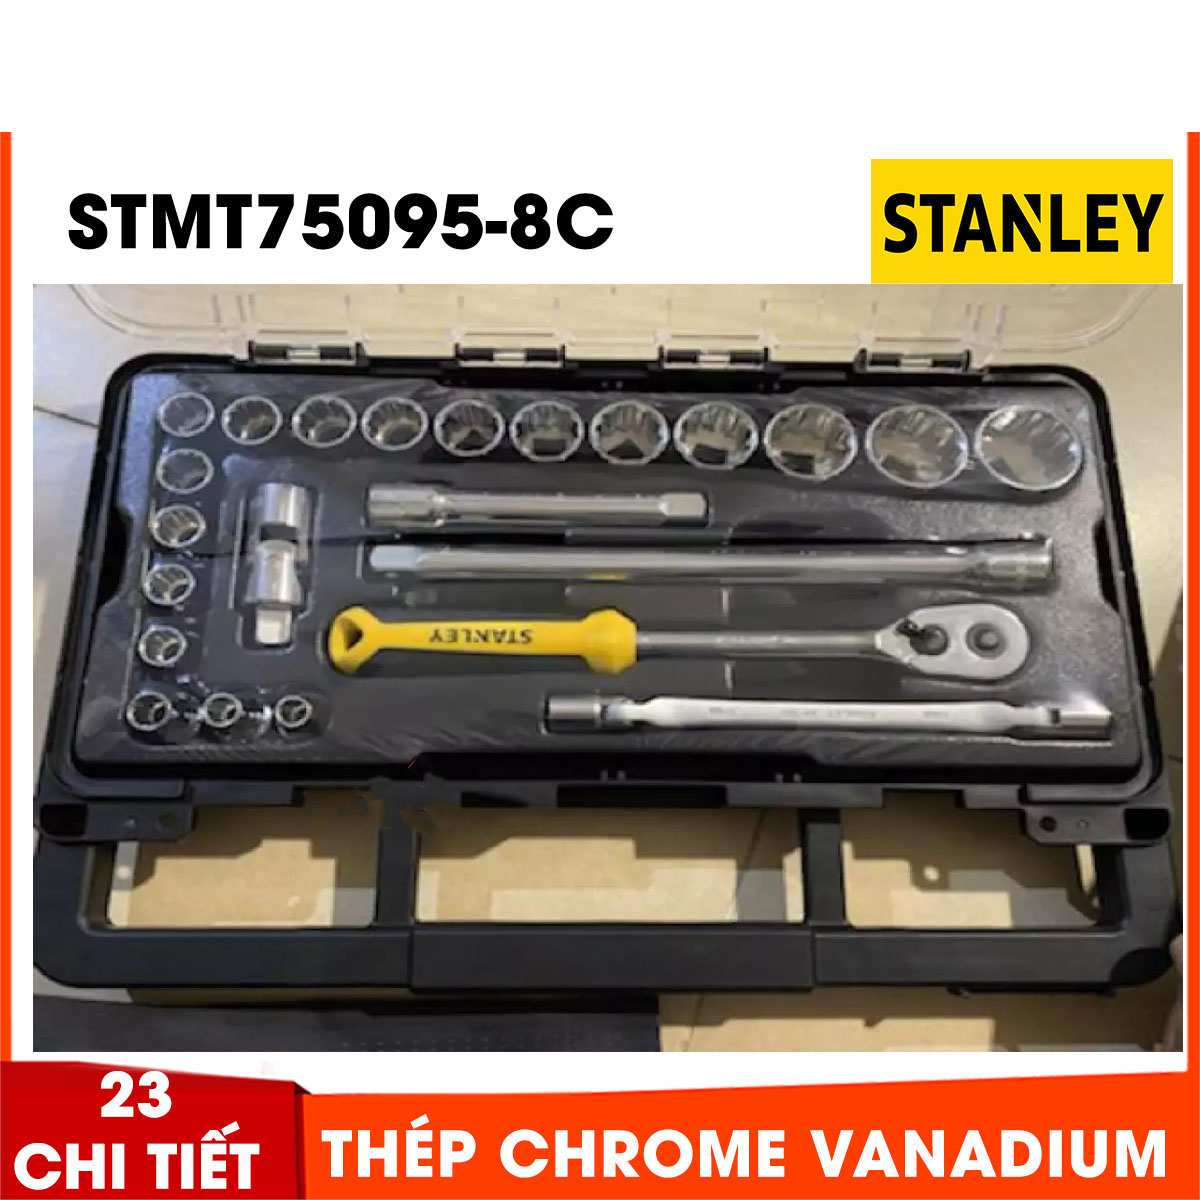 Hình ảnh 4 của mặt hàng Đầu tuýp 1/2" 12PT 23 chi tiết Stanley STMT75095-8C